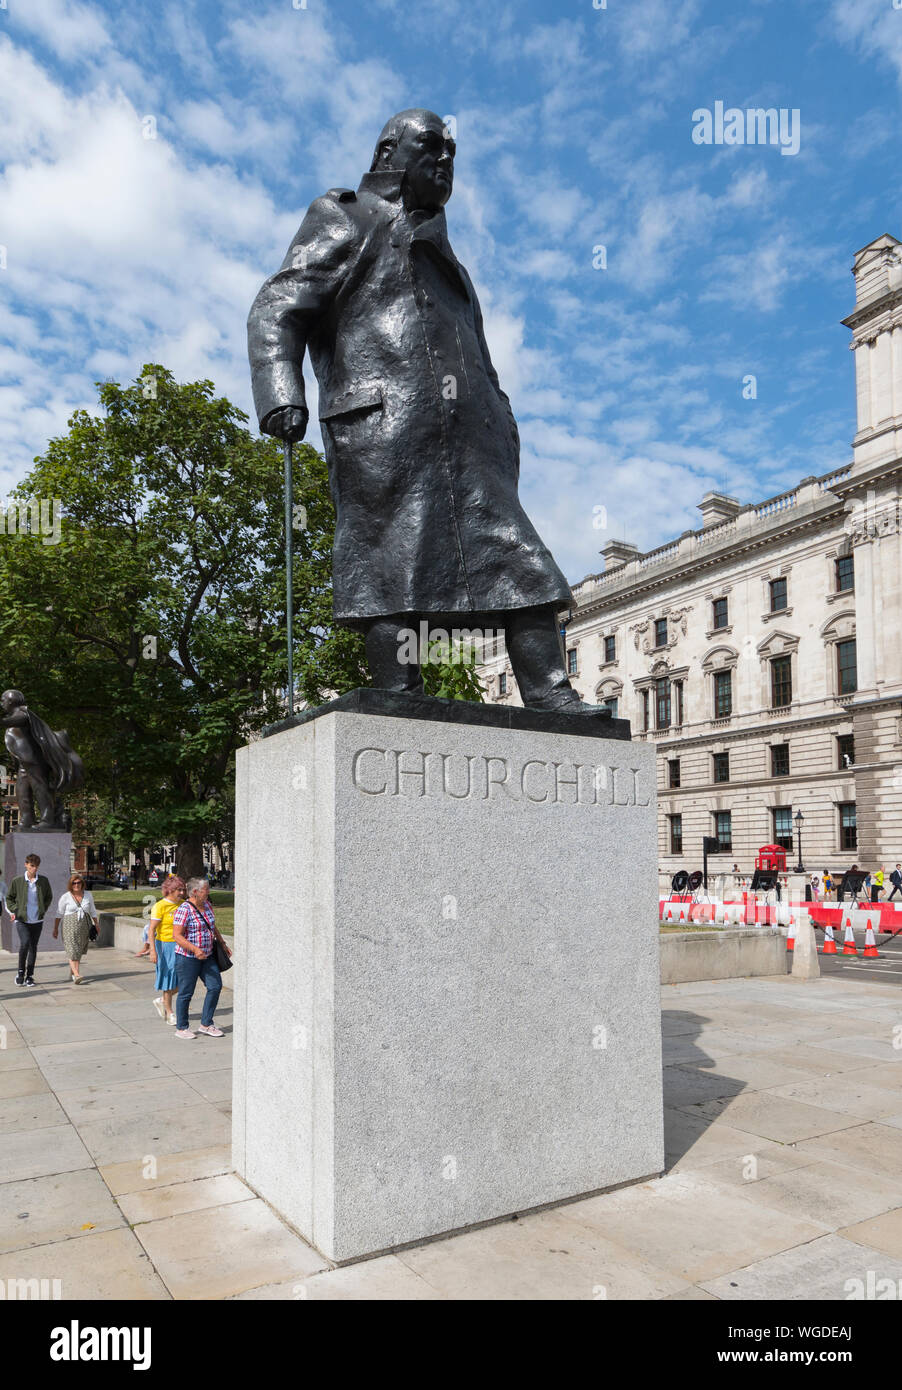 Statue von Sir Winston Churchill, eine Bronzeskulptur auf dem Parliament Square, City of Westminster, Central London, England, UK. Churchill Statue London. Stockfoto